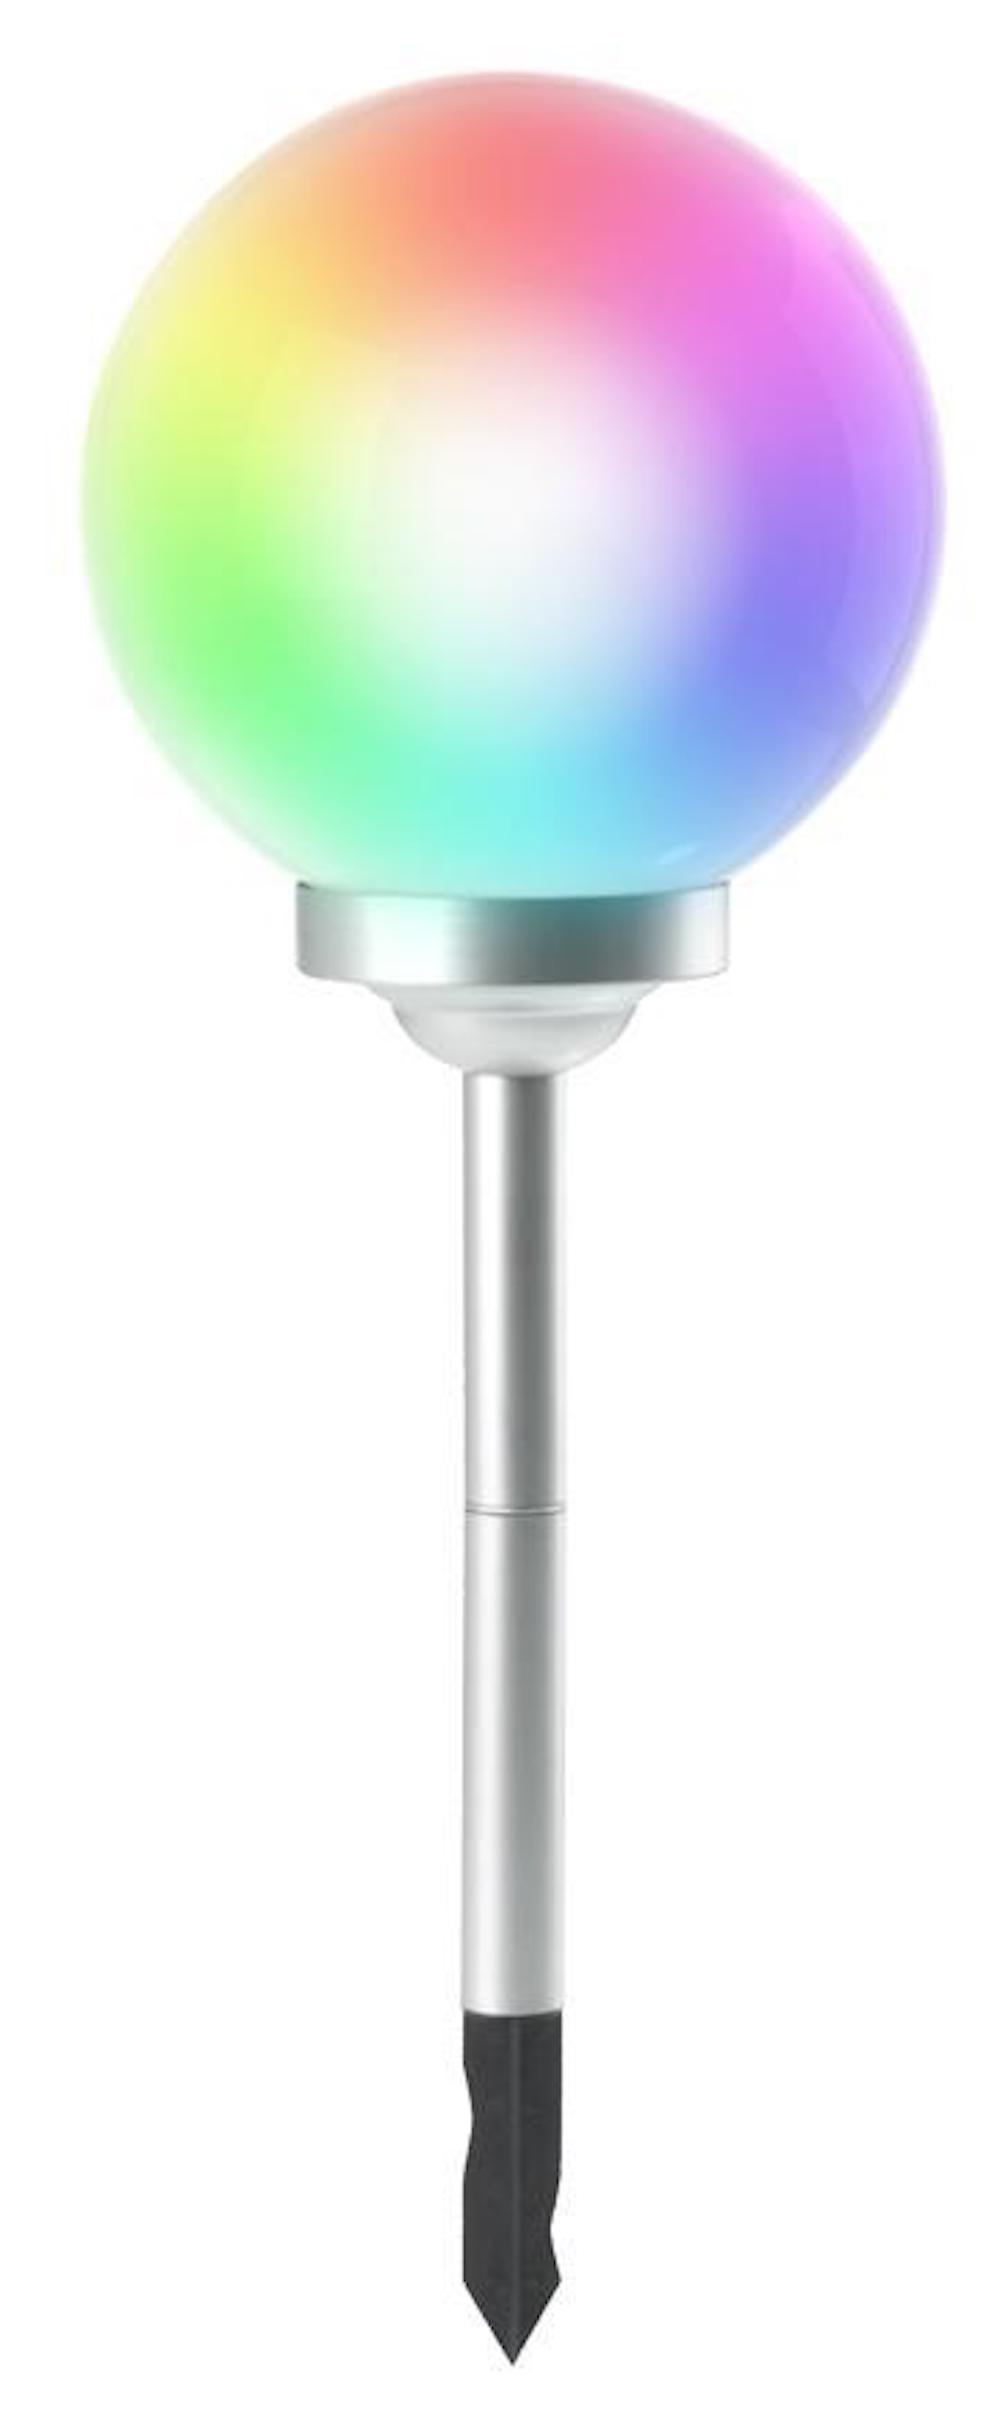 SuperSparSet 10x RAINBOW Solarlampe mit automatischer Einschaltfunktion | HxØ 73,5x30cm | 4-farbige LEDs | Automatisches Schalten | Gartenlampe, Rattanlampe, LED Lampe, Solarlampe